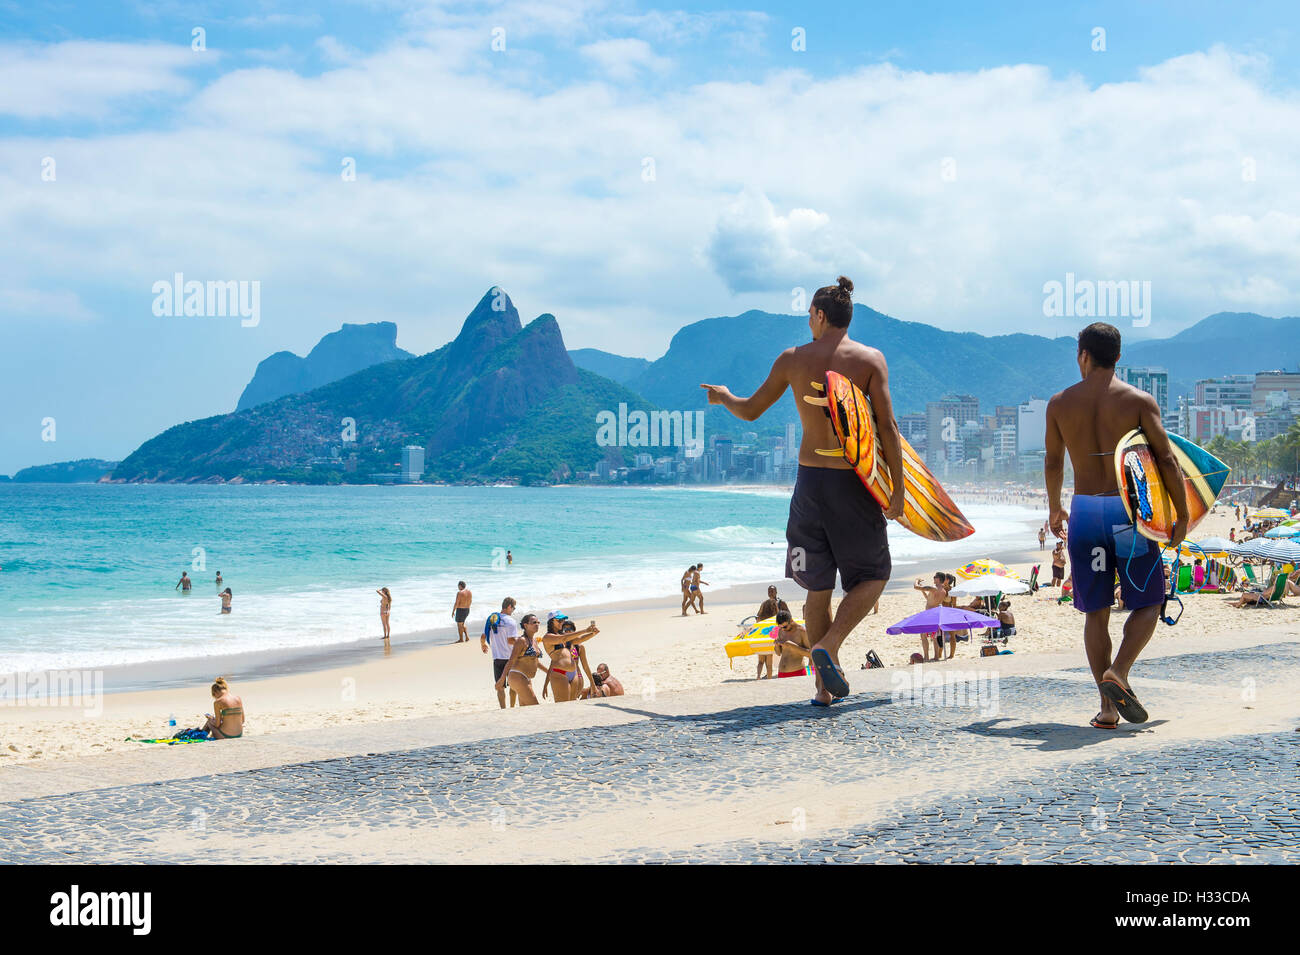 RIO DE JANEIRO - Abril 3, 2016: el joven surfista brasileño carioca caminar con tablas de surf de Arpoador, el popular surf point. Foto de stock